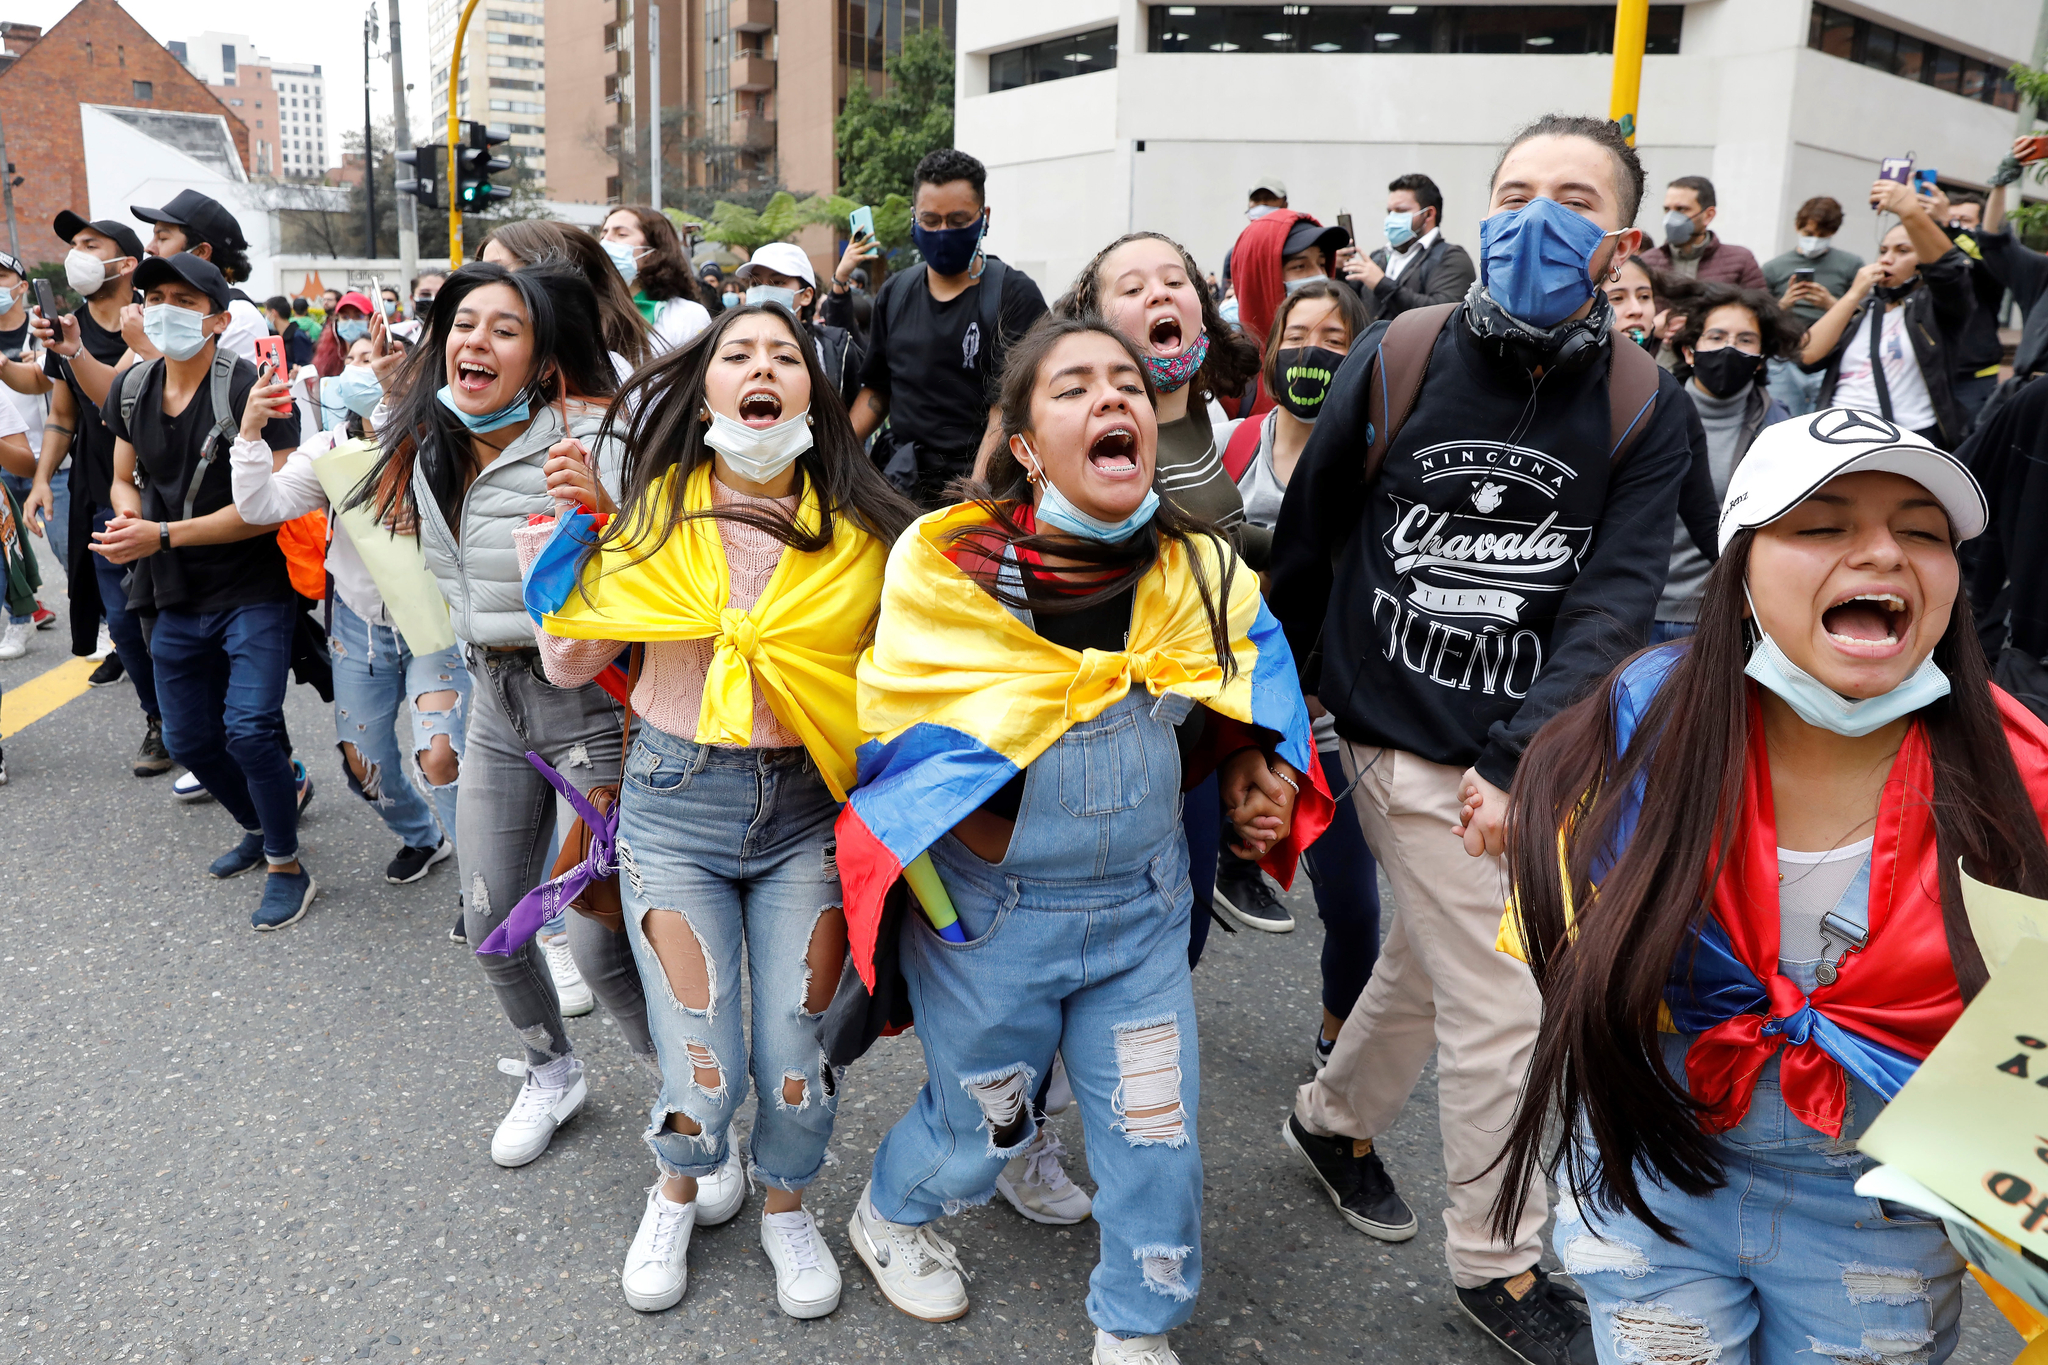 콜롬비아 보고타 대학생들이 4일 거리에서 반정부 시위에 참가하고 있다. 경찰의 무리한 진압으로 최소 19명이 숨지고 800명 이상이 부상한 가운데 콜롬비아에서는 긴장이 고조되고 있다. 국제사회는 사태해결을 위한 대화를 요구하고 있다. EPA=연합뉴스